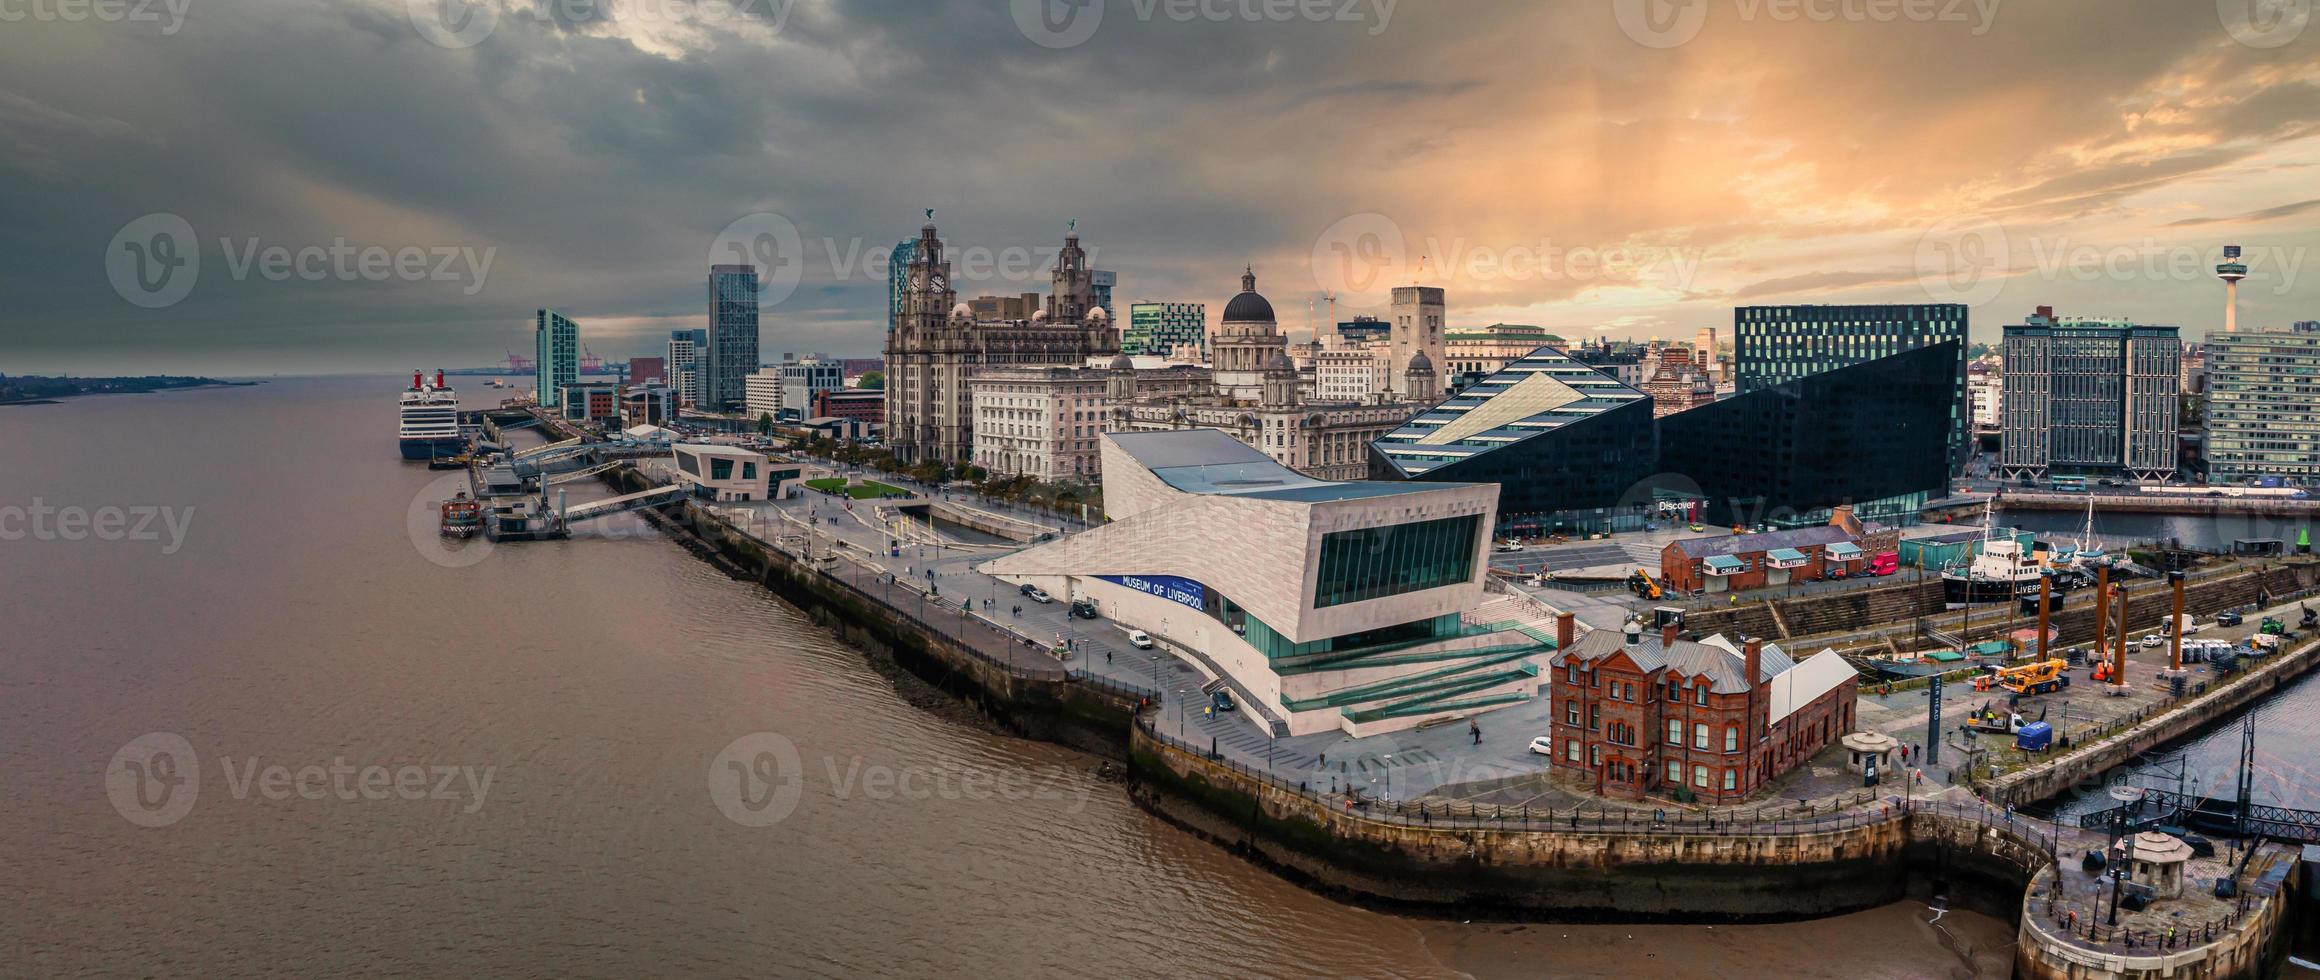 Luftaufnahme des Museums von Liverpool, Großbritannien foto